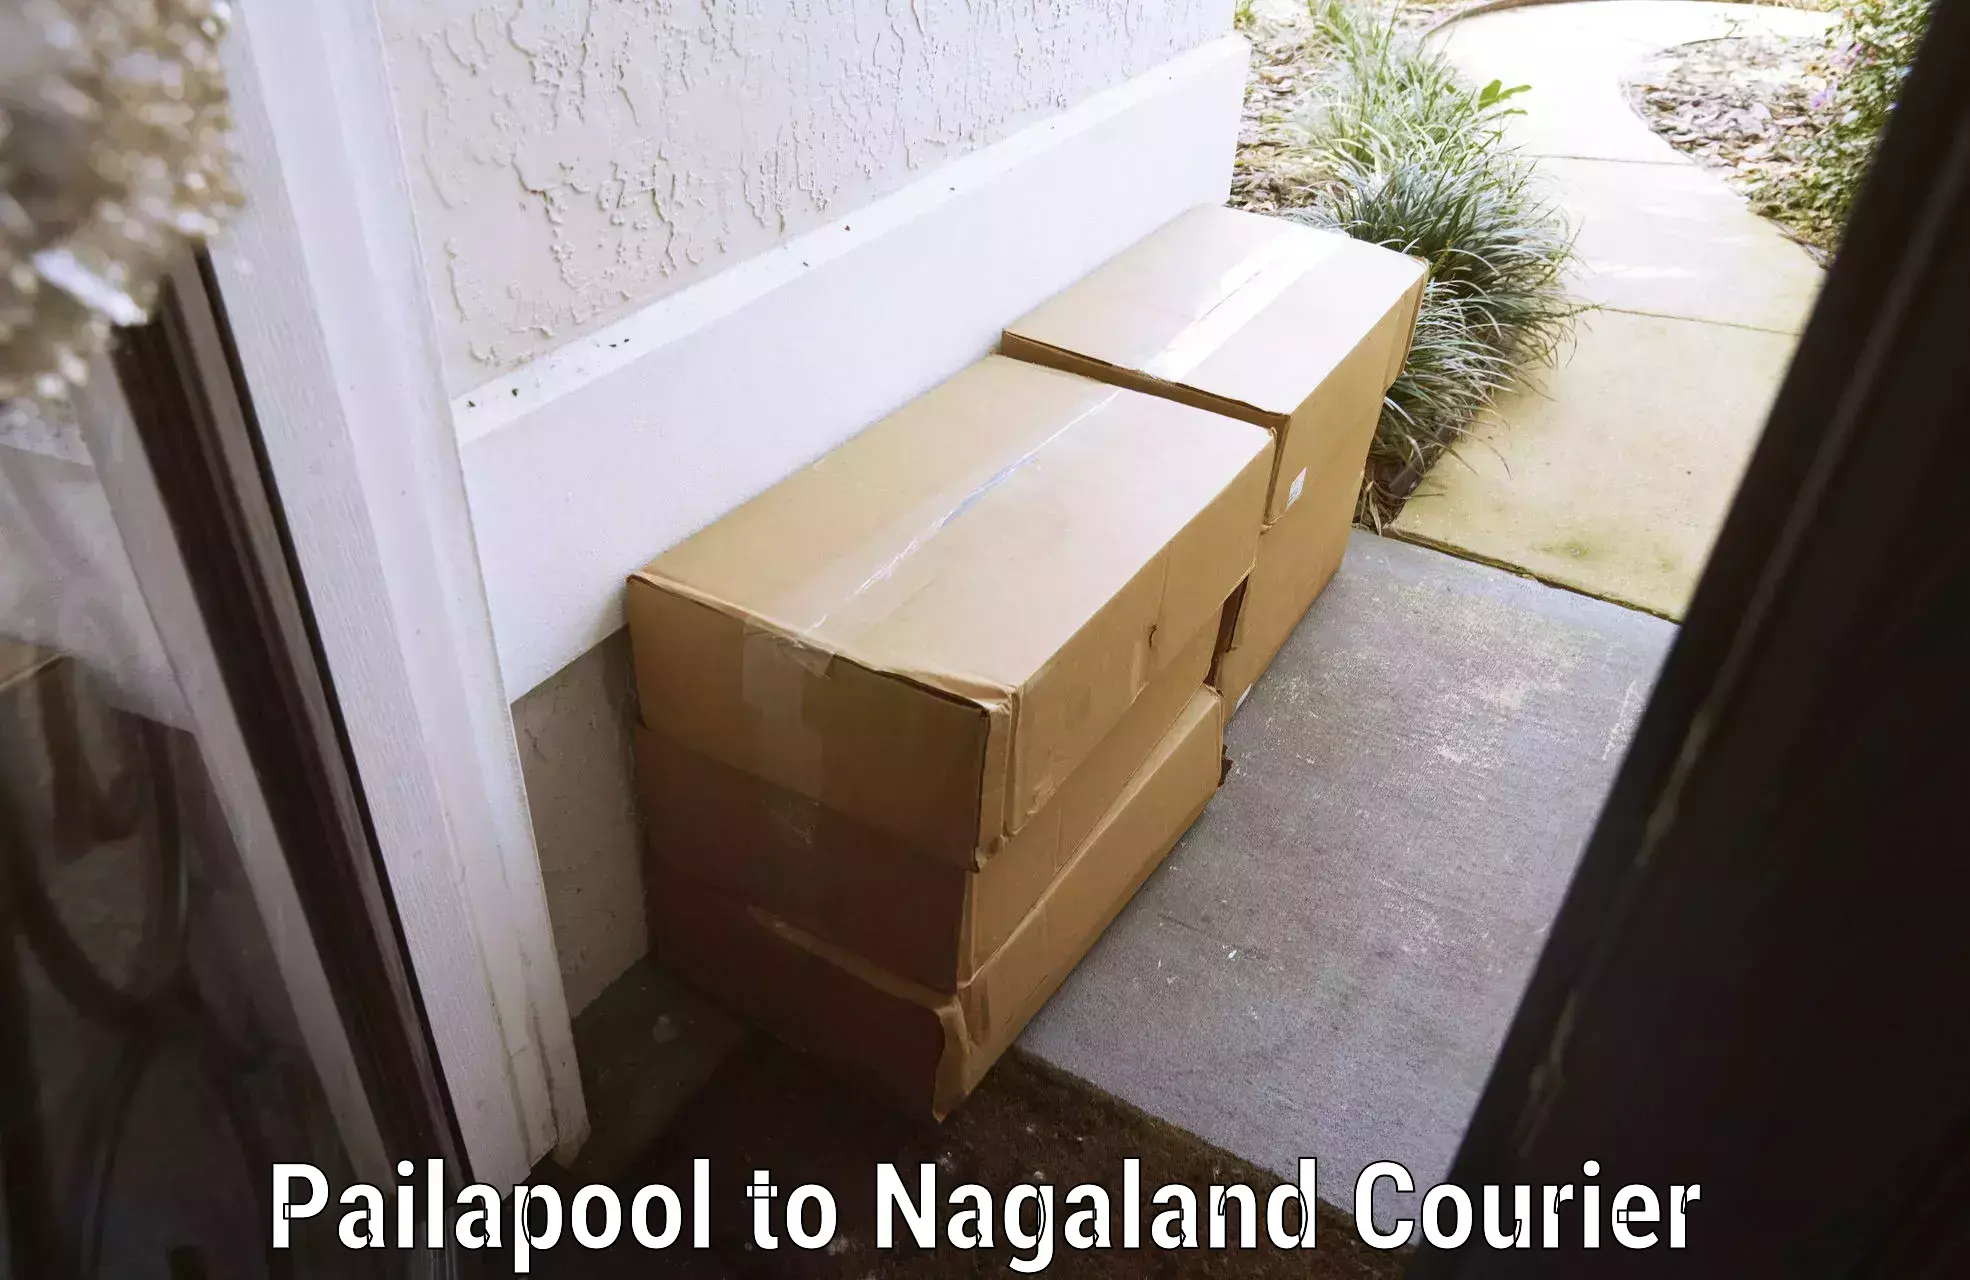 Regional luggage transport Pailapool to Nagaland